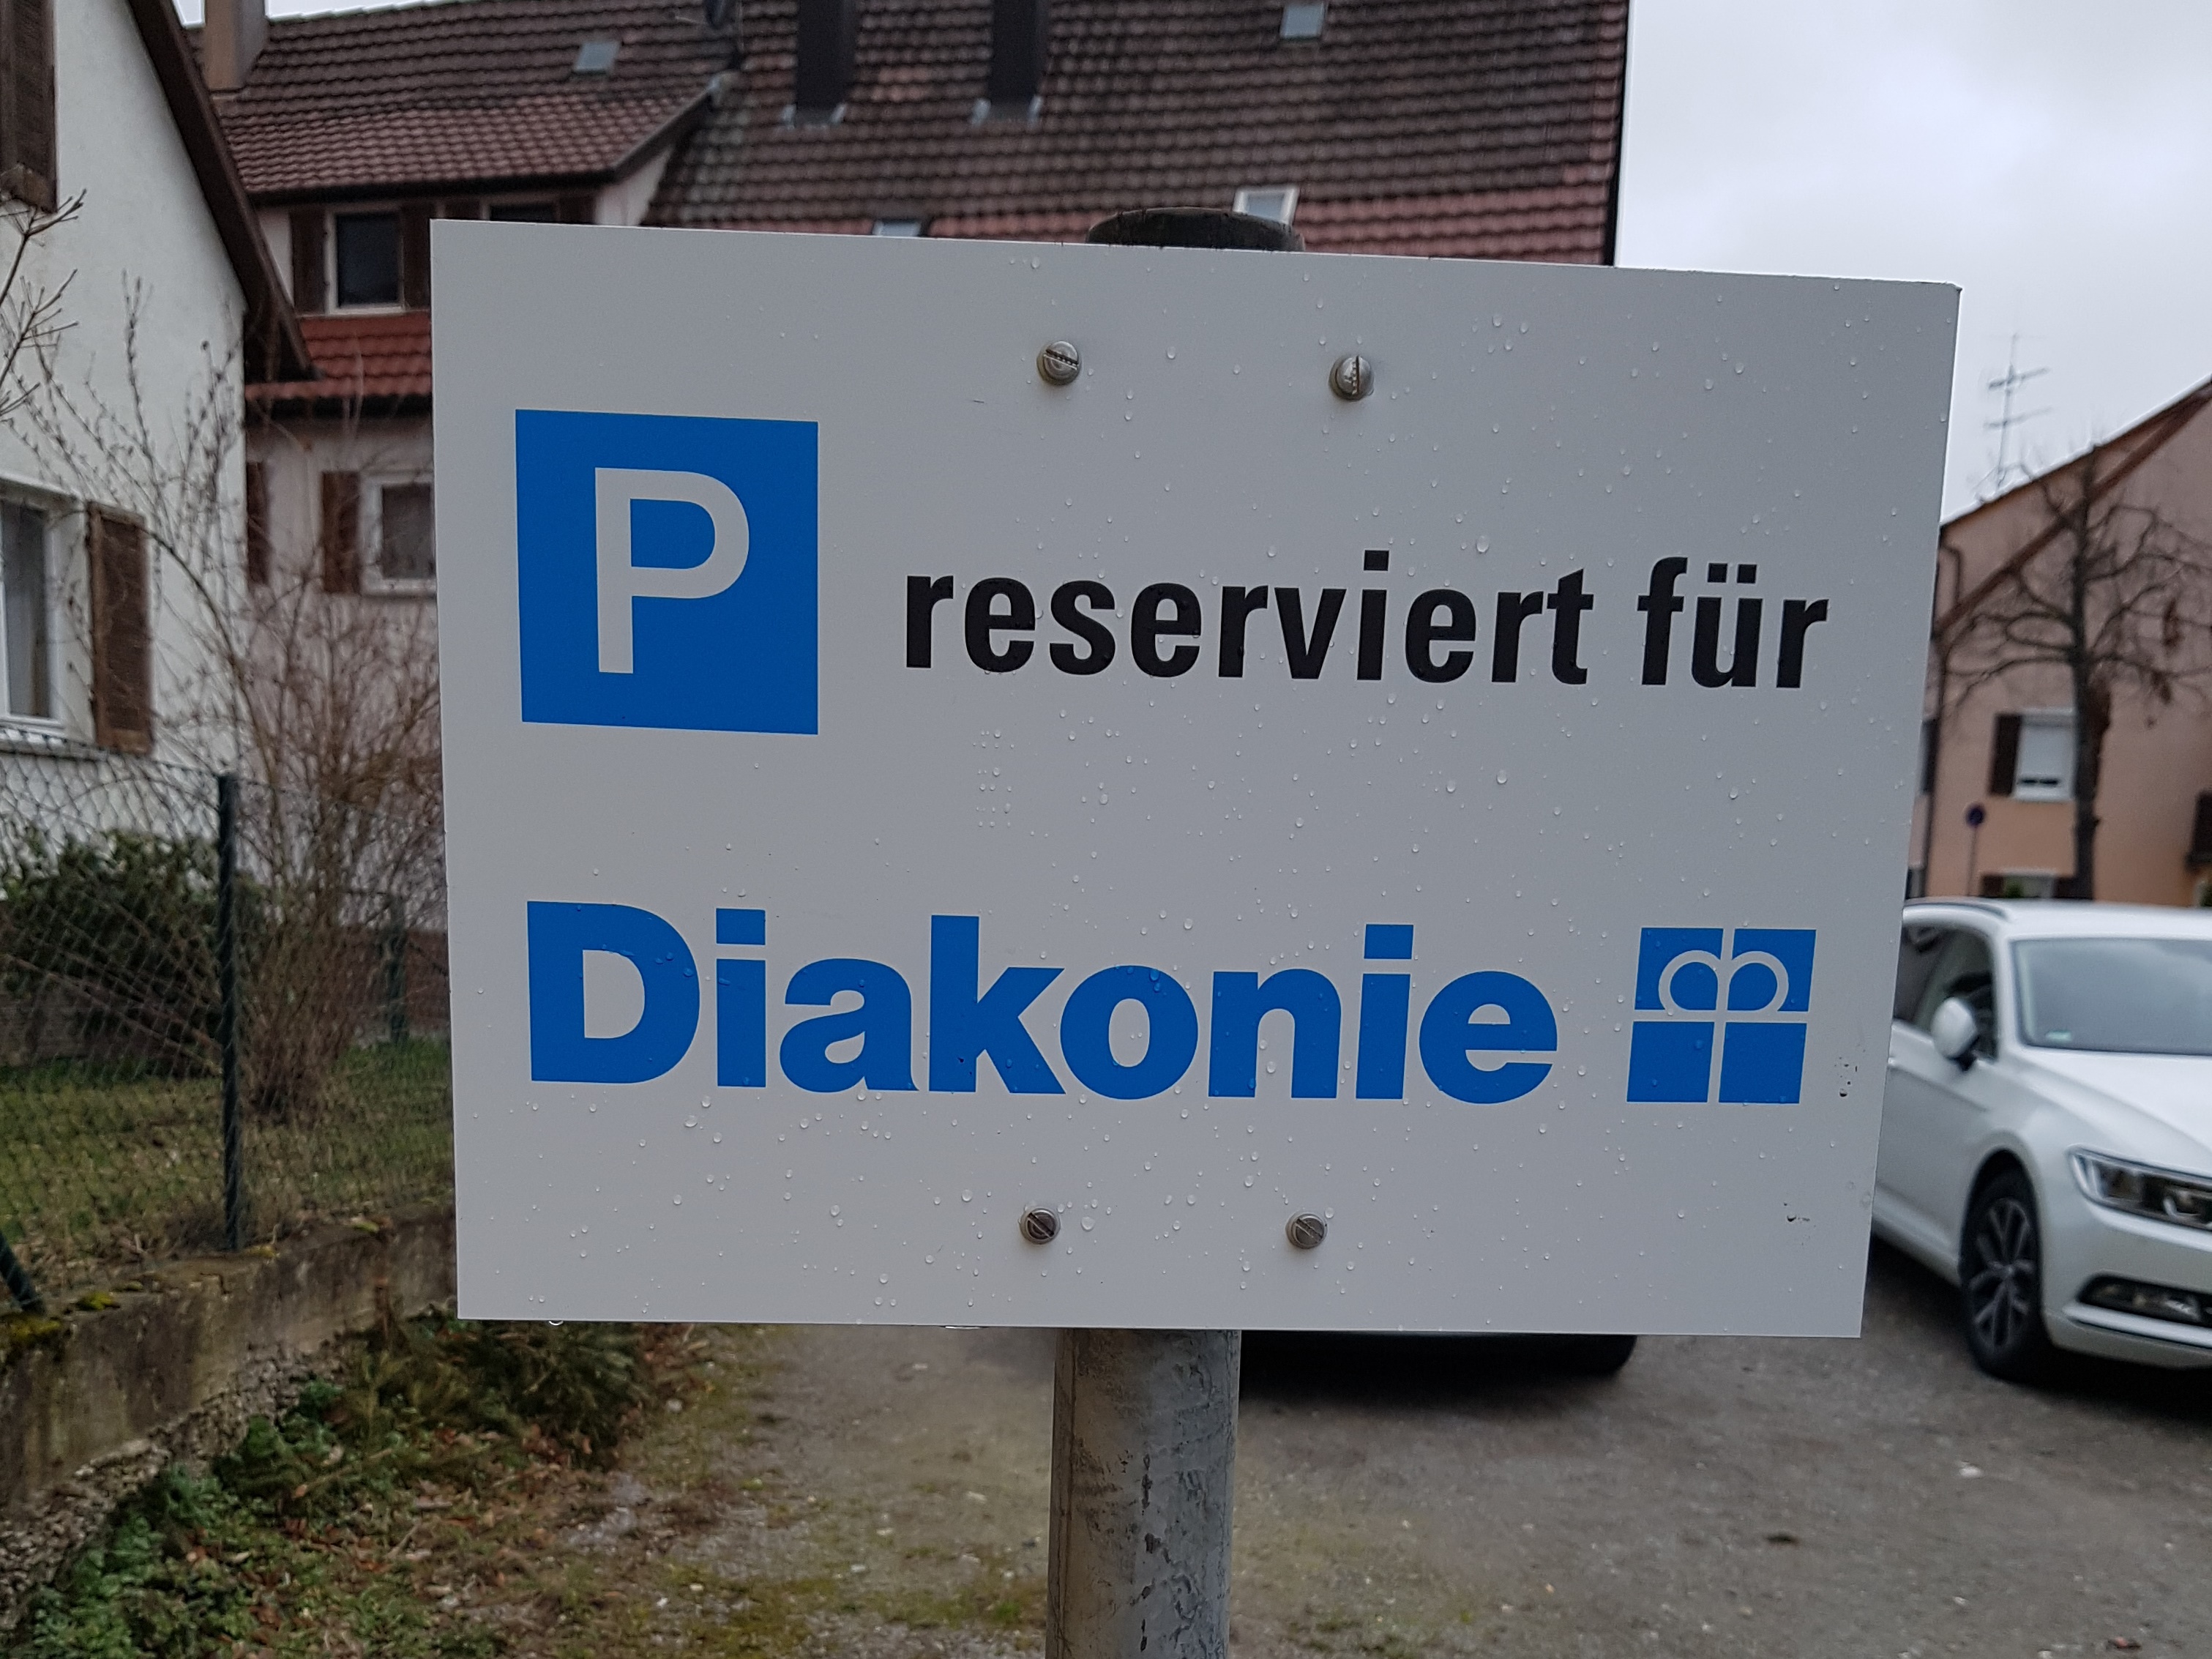  Parkplatz der Diakonie - Bild 1 